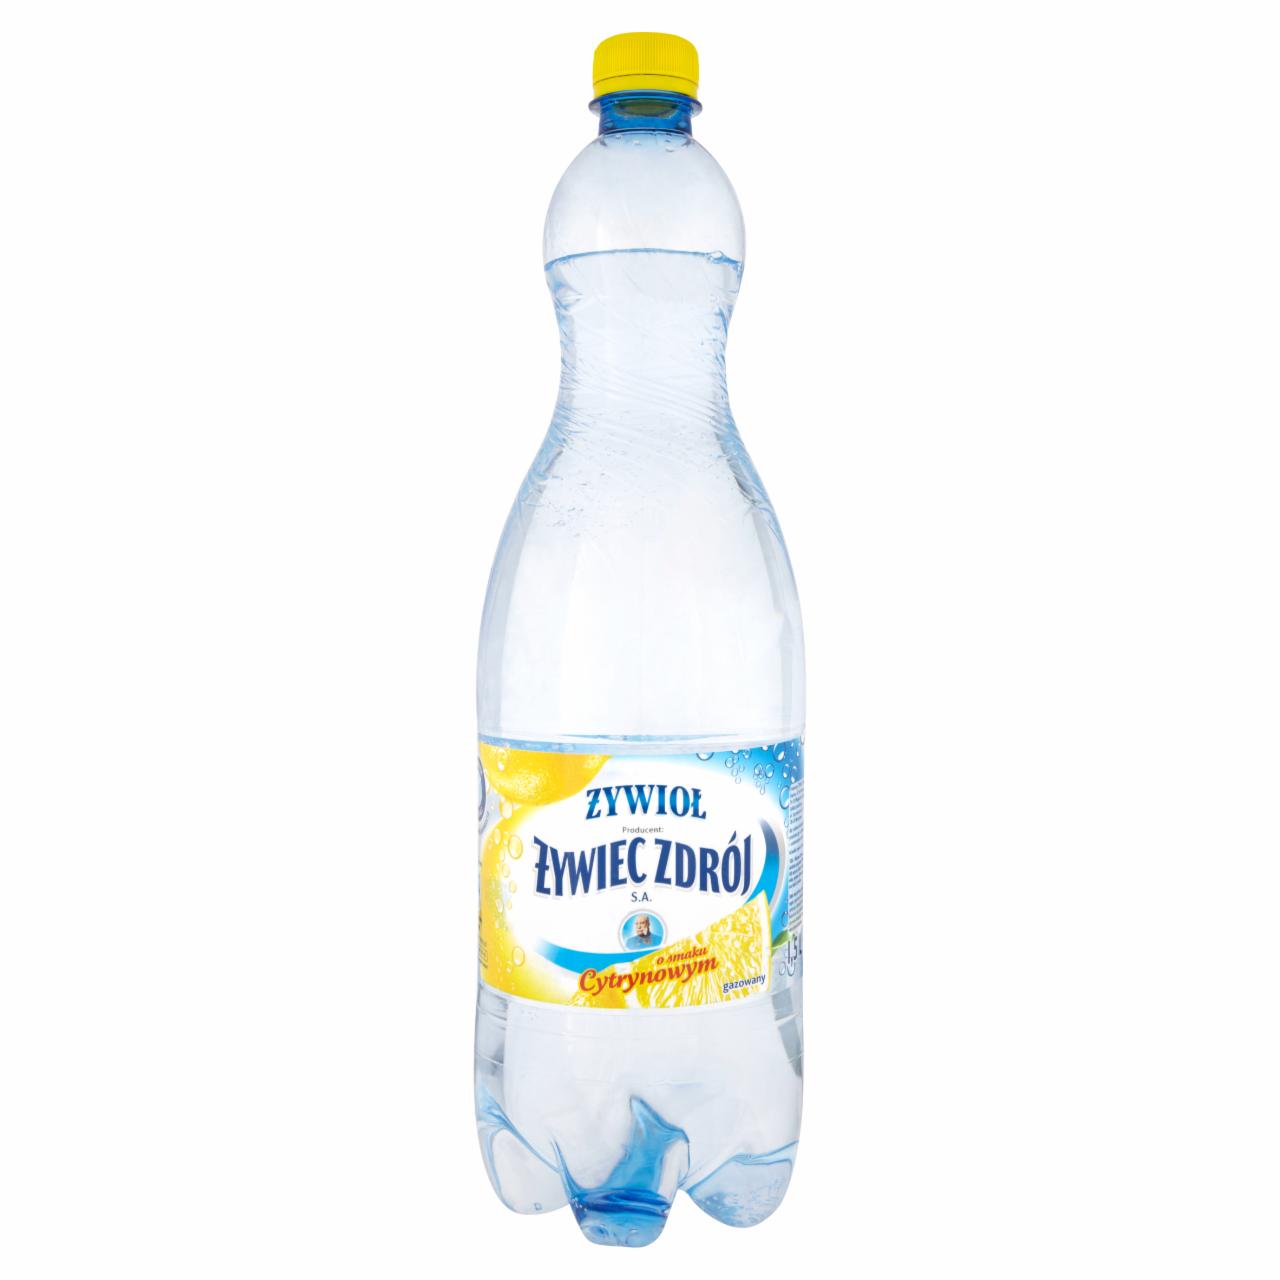 Photo - Żywioł from Żywiec Zdrój SA Lemon Flavoured Sparkling Water 1.5 L